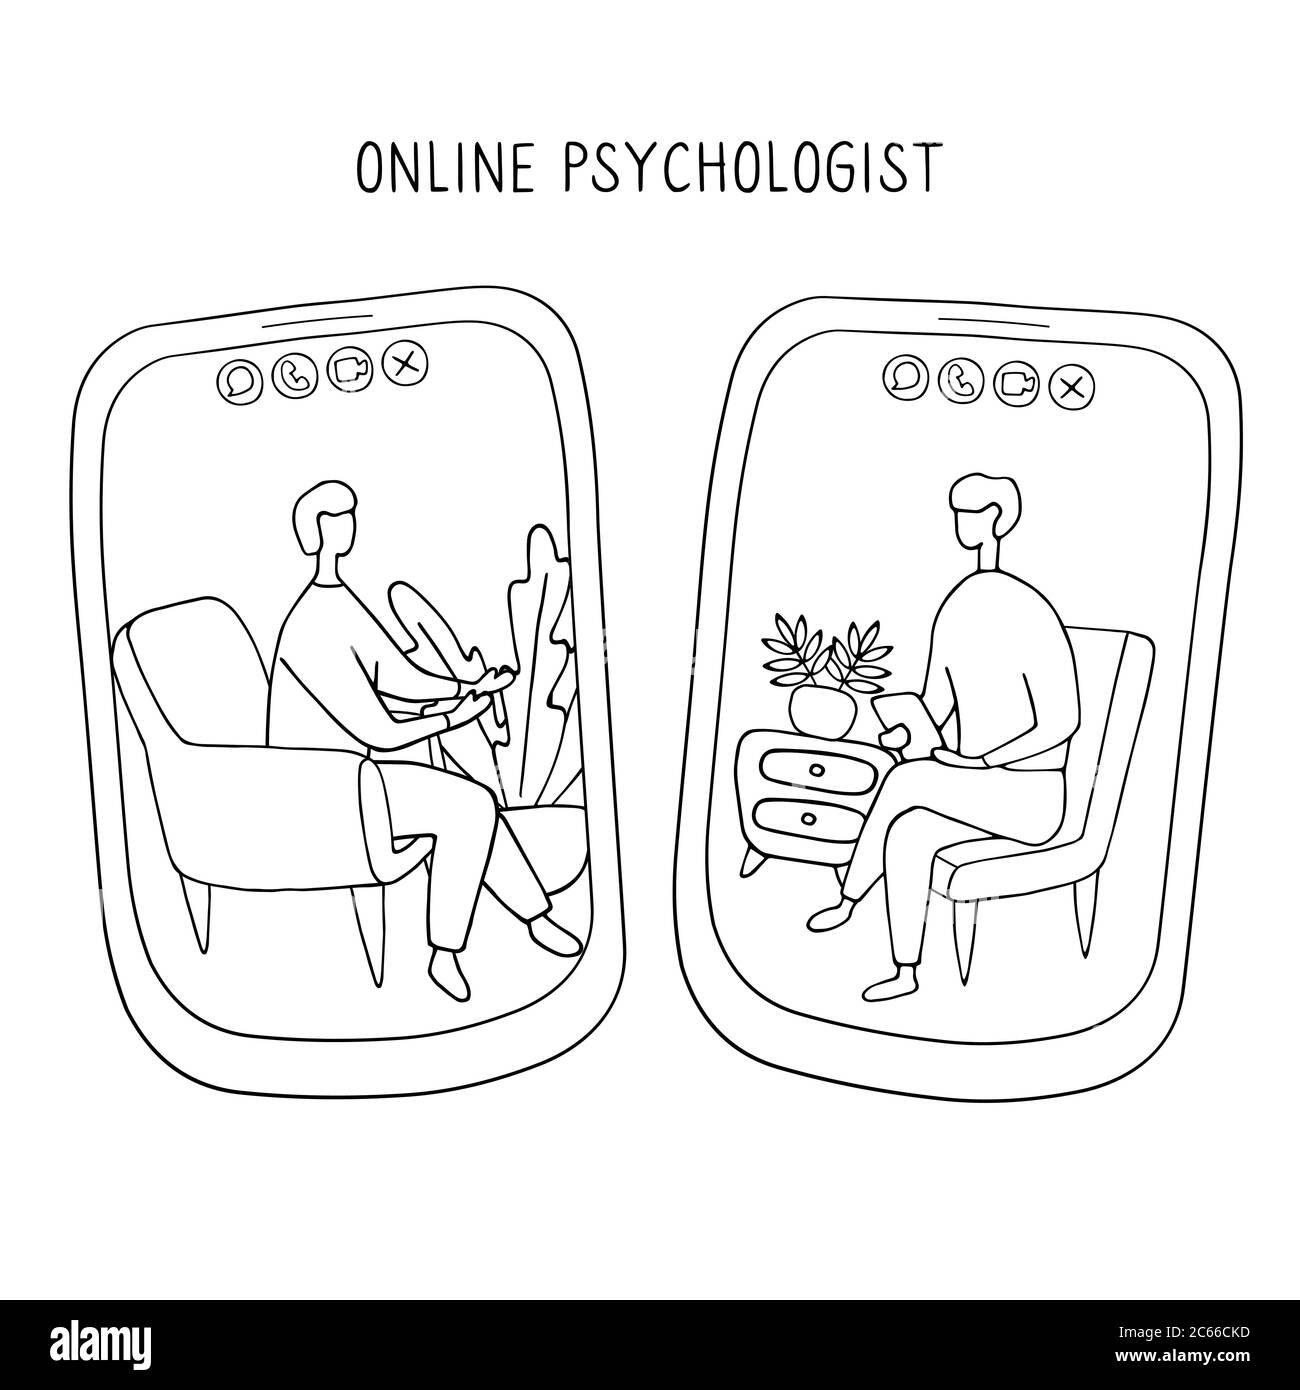 Arzt und Patient kommunizieren per Videoanruf. Online Psychiater Konzept. Zwei Menschen auf Bildschirmen von Smartphones sprechen miteinander. Von Hand gezeichnet Stock Vektor